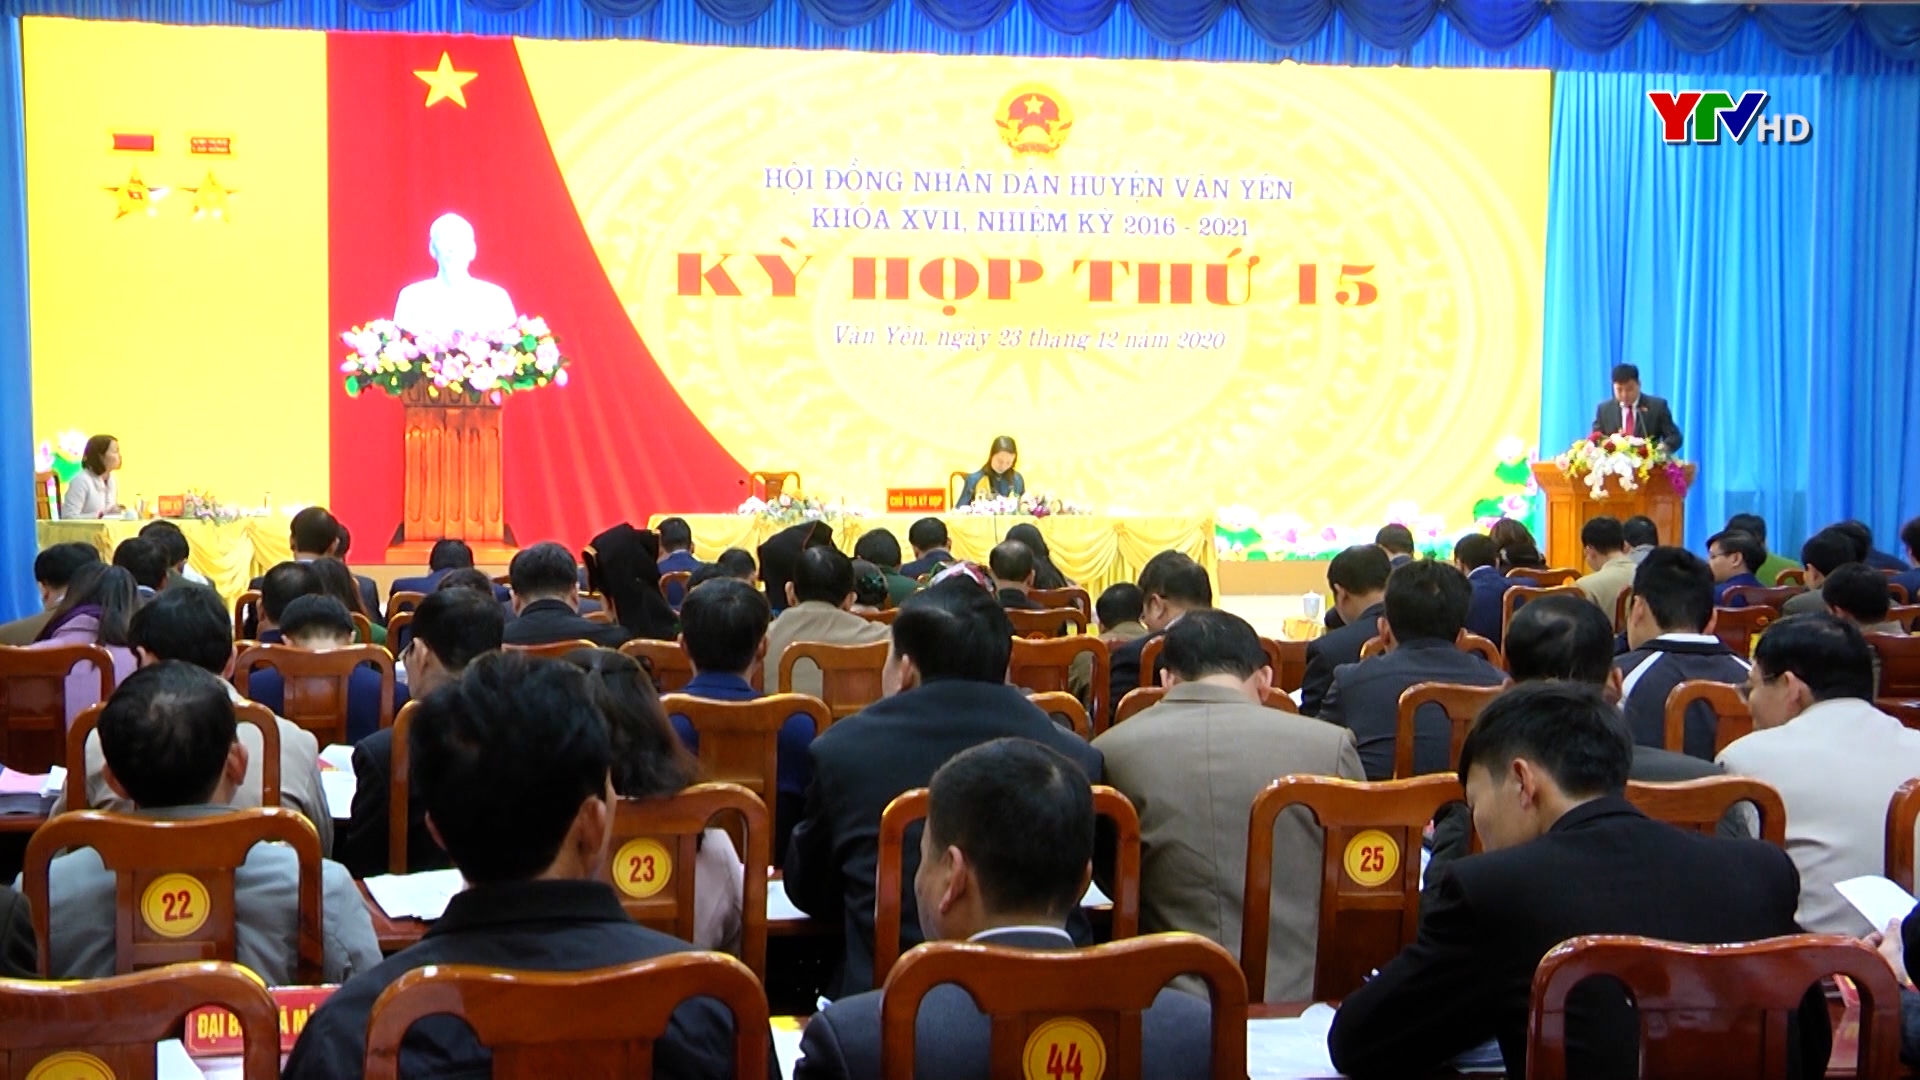 Kỳ họp thứ 15 - Hội đồng nhân dân huyện Văn Yên